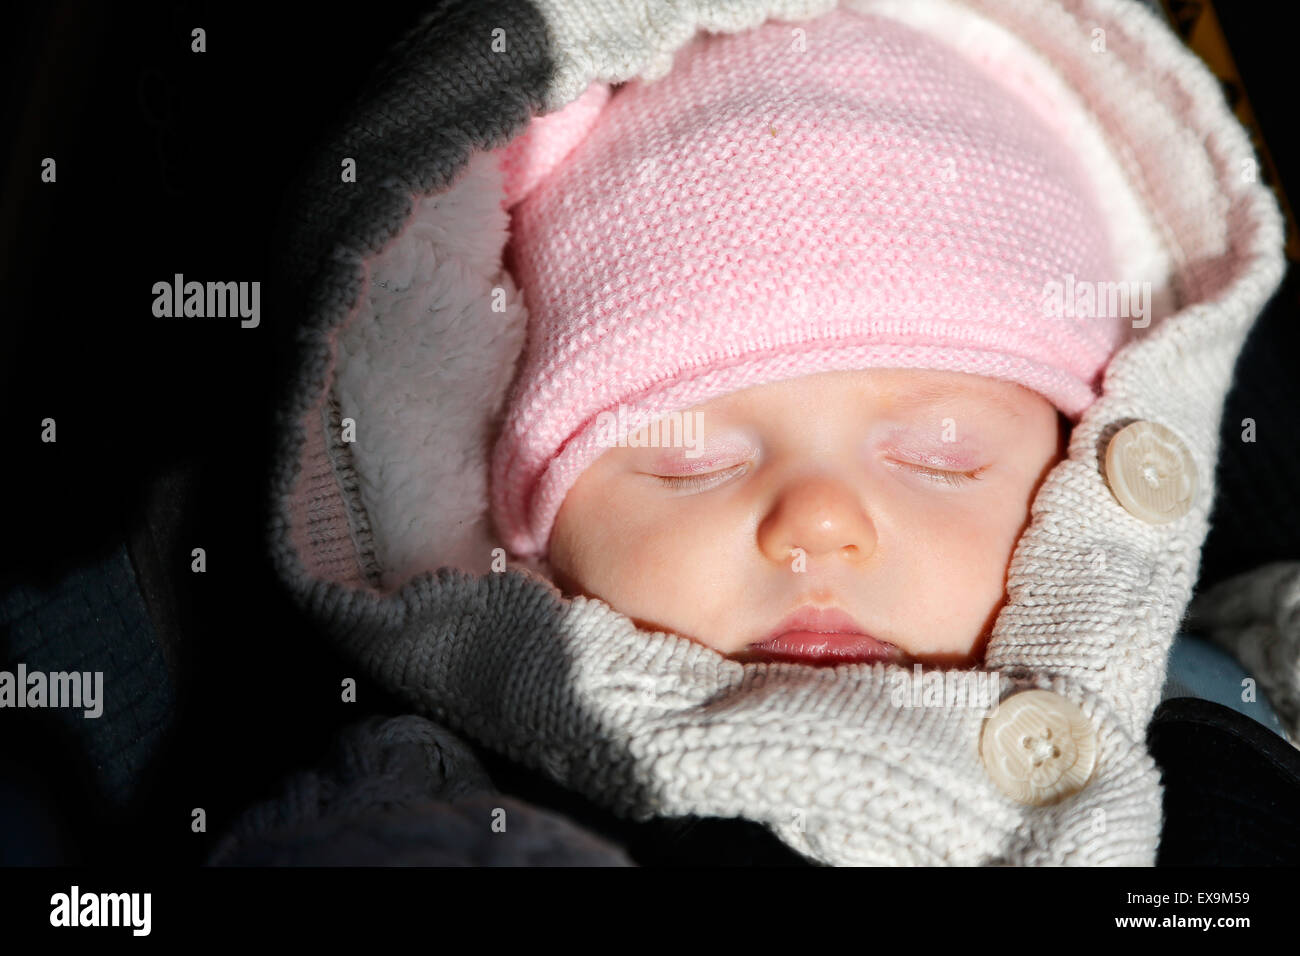 Ein Baby, eingewickelt in warme Winterkleidung, gemütlich und in ihrem Kinderwagen, trotz des kalten englischen Winters Stockfoto